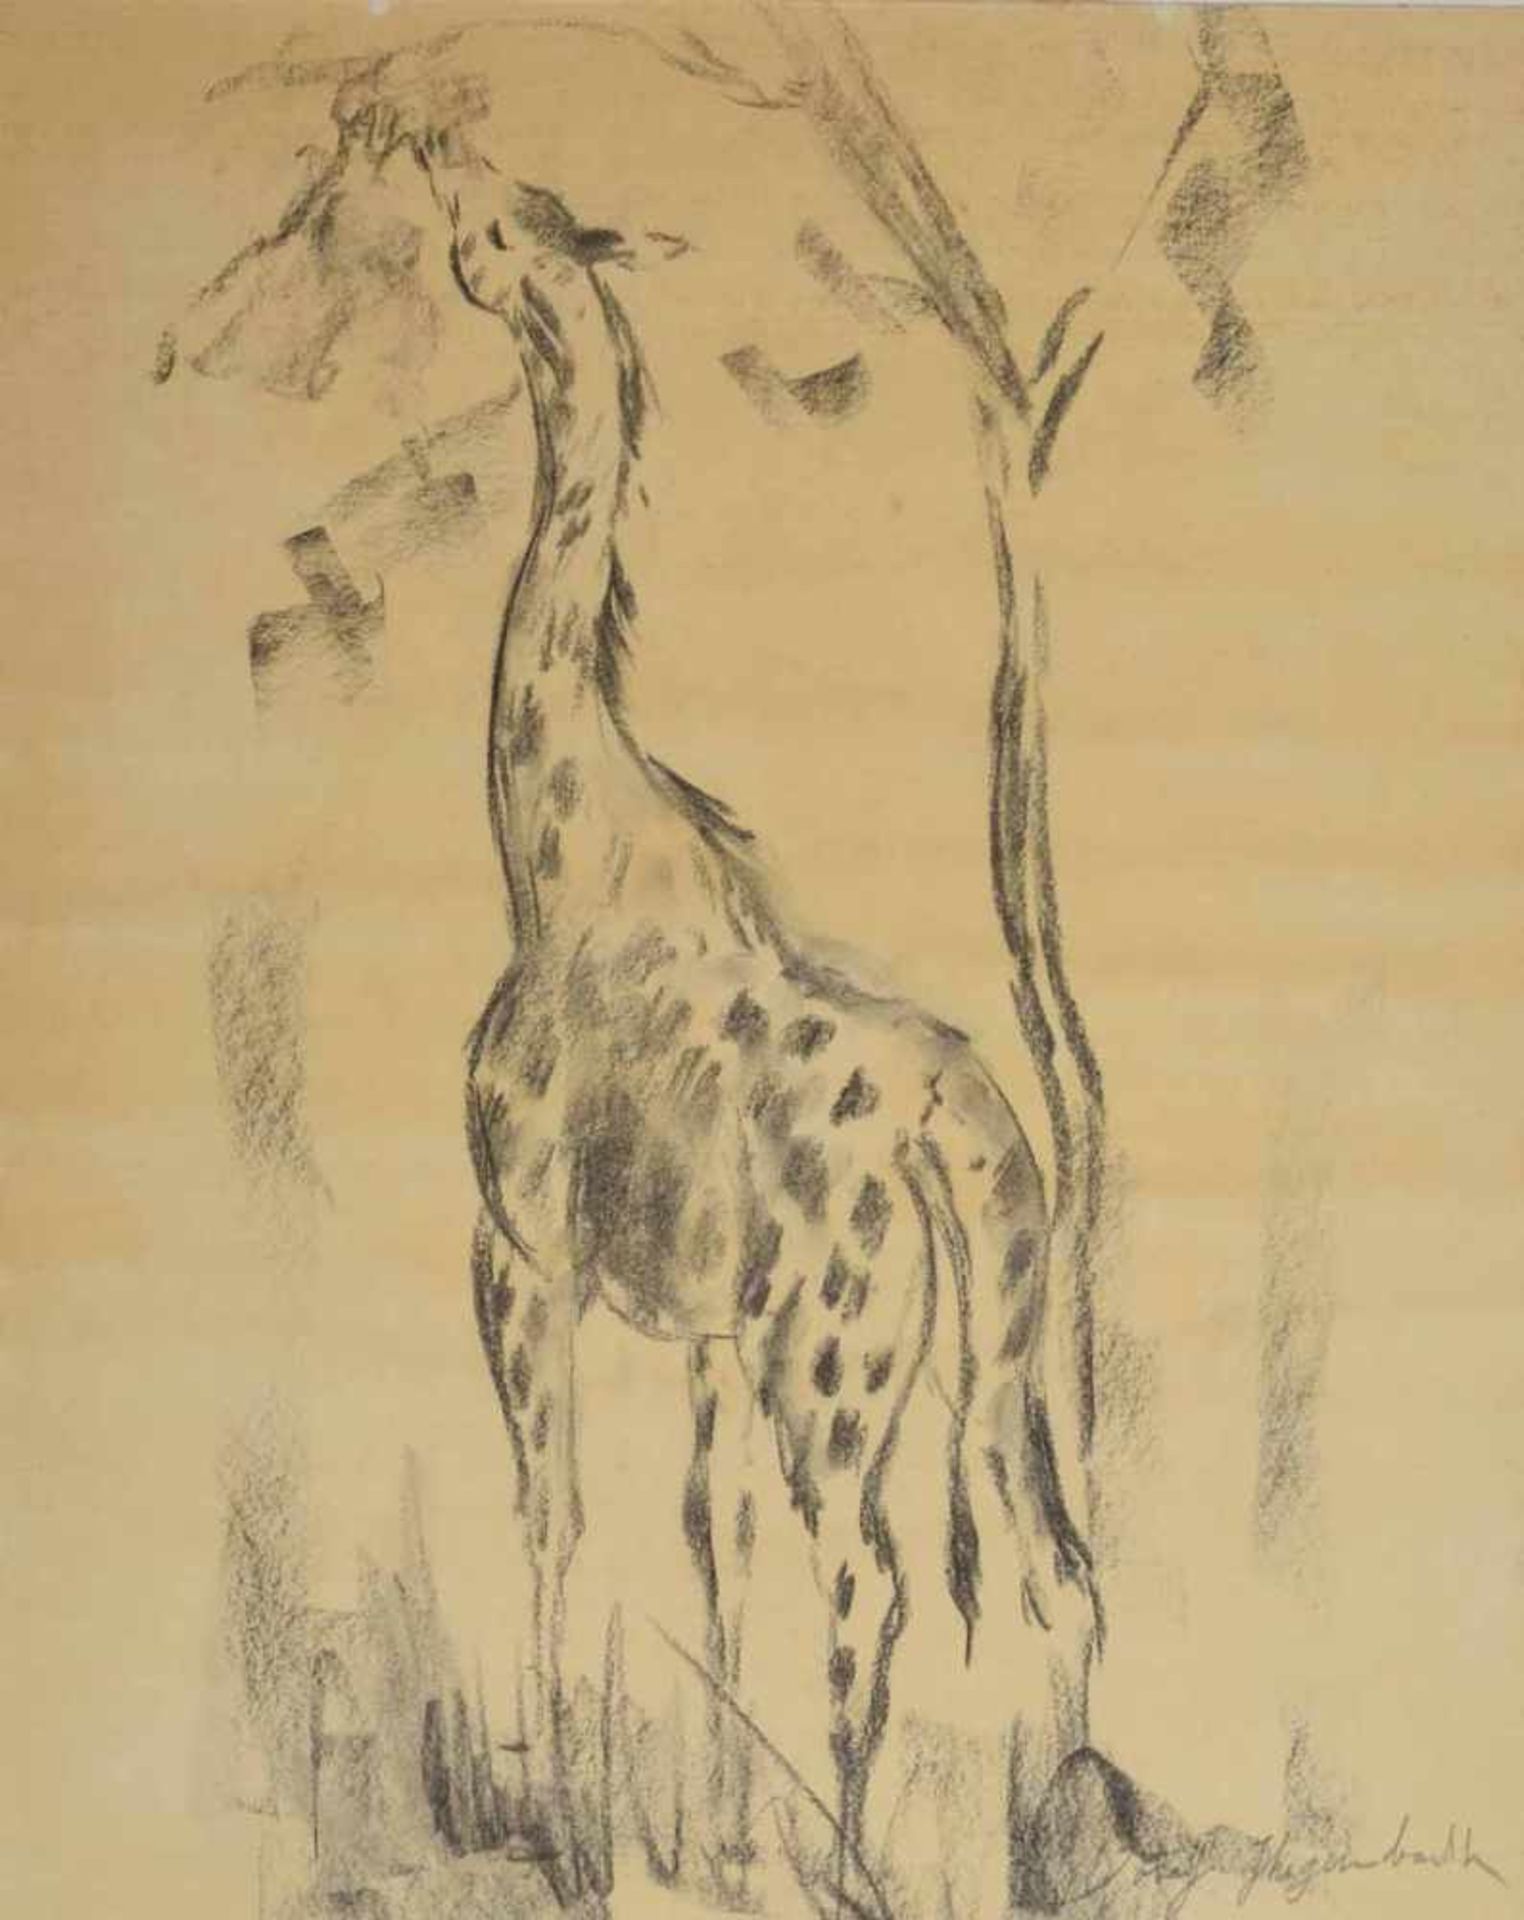 Exotische Tierzeichnung Graphit auf Papier, Giraffe, stehende Darstellung, den Kopf in das Blattwerk - Bild 2 aus 3